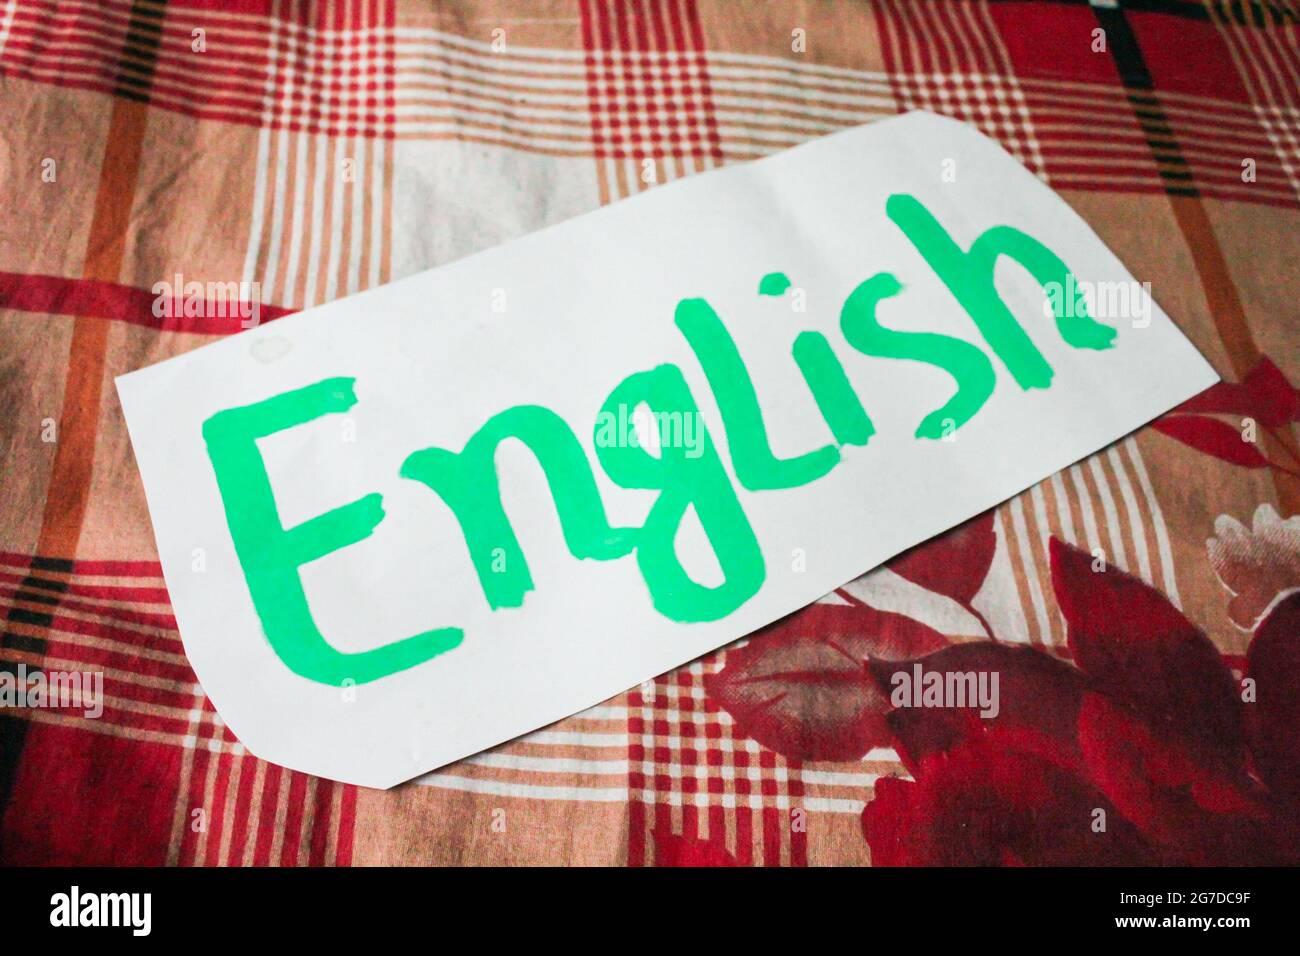 English word written on white paper Stock Photo